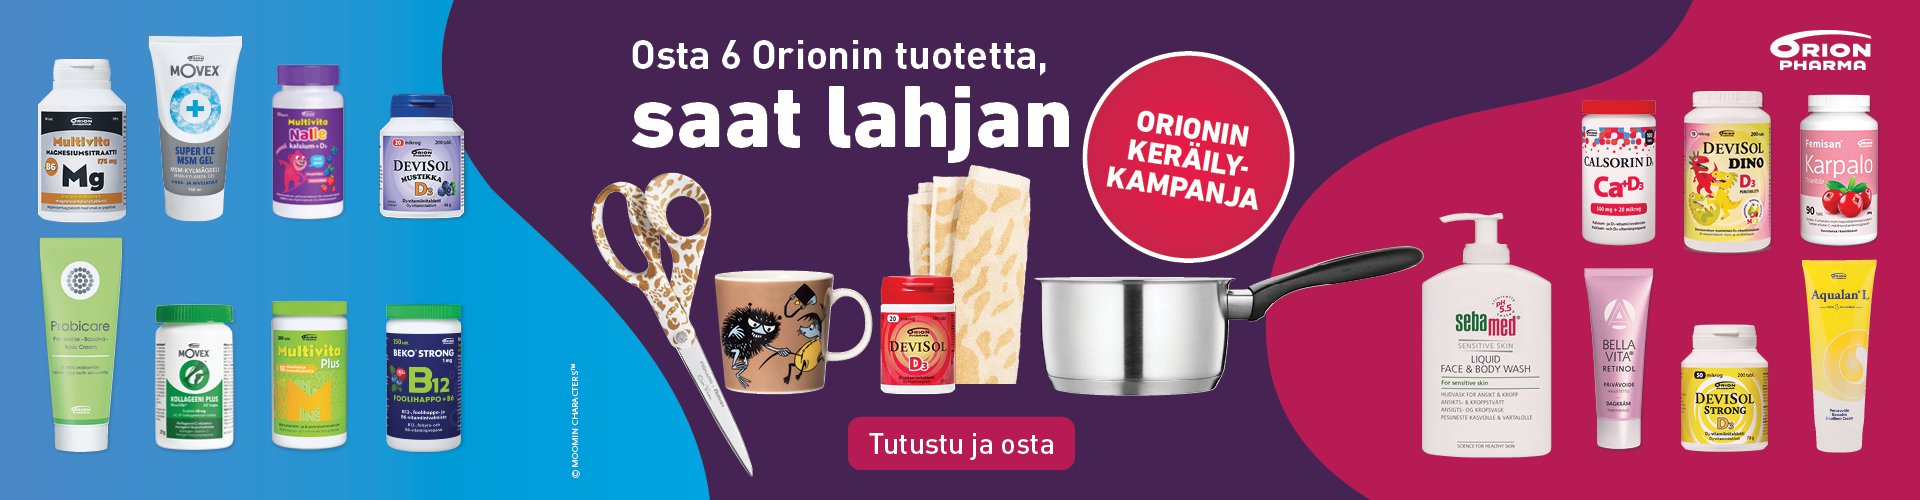 Orionin keräilykampanja, osta 6 tuotetta, saat lahjan